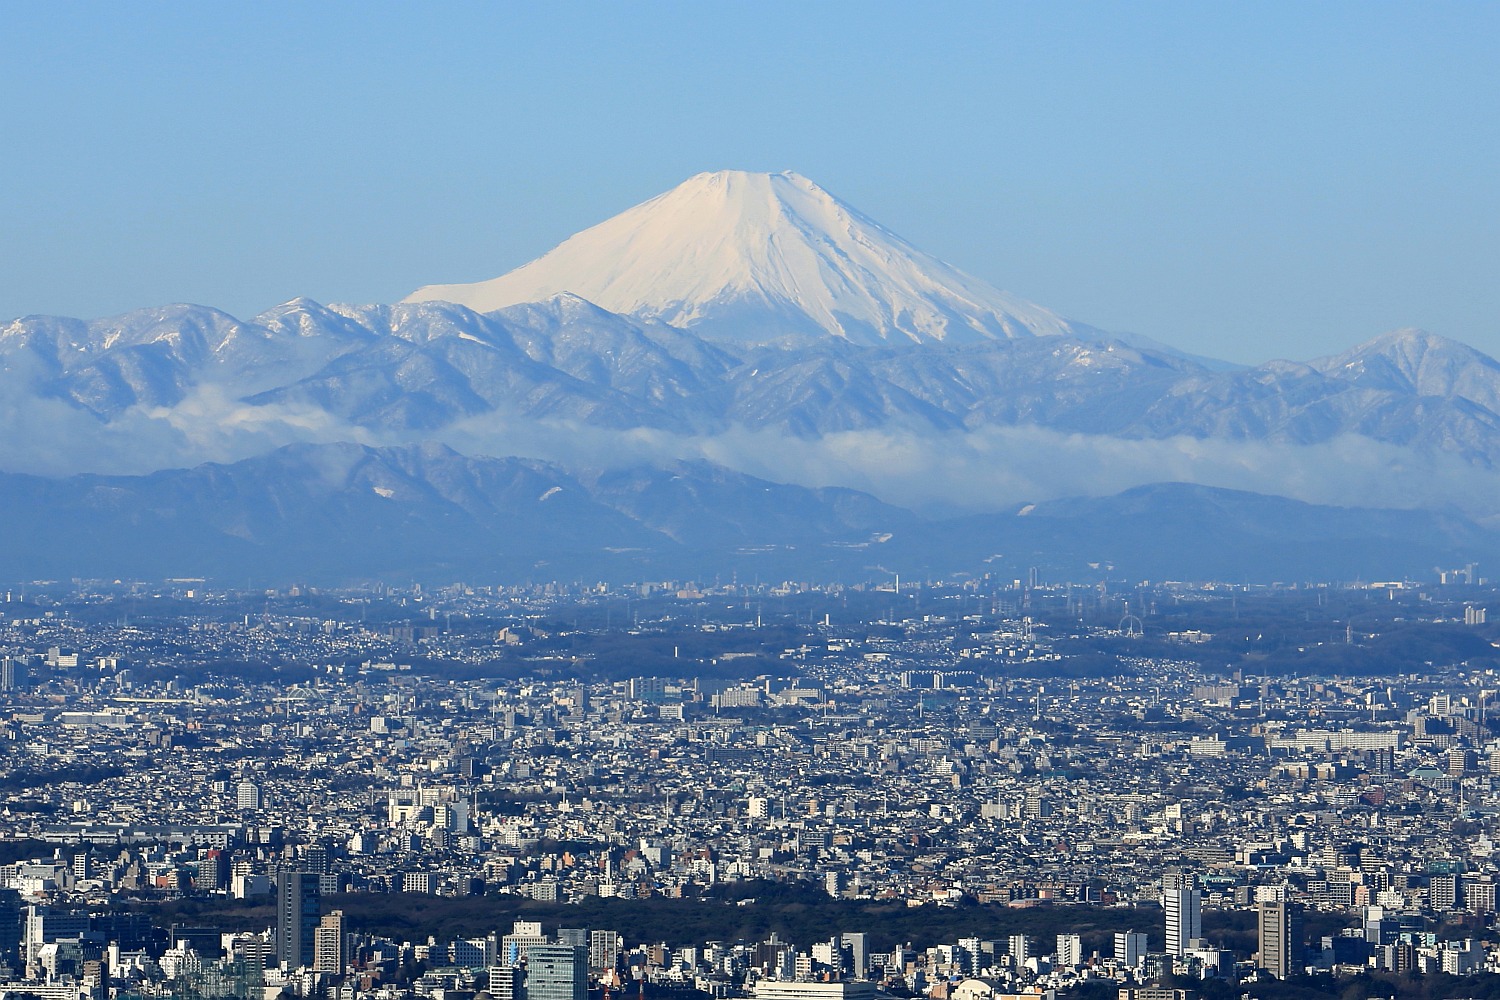 東京スカイツリーの天望回廊から見た富士山など雪化粧した山々 16 2 7 超高層マンション 超高層ビル